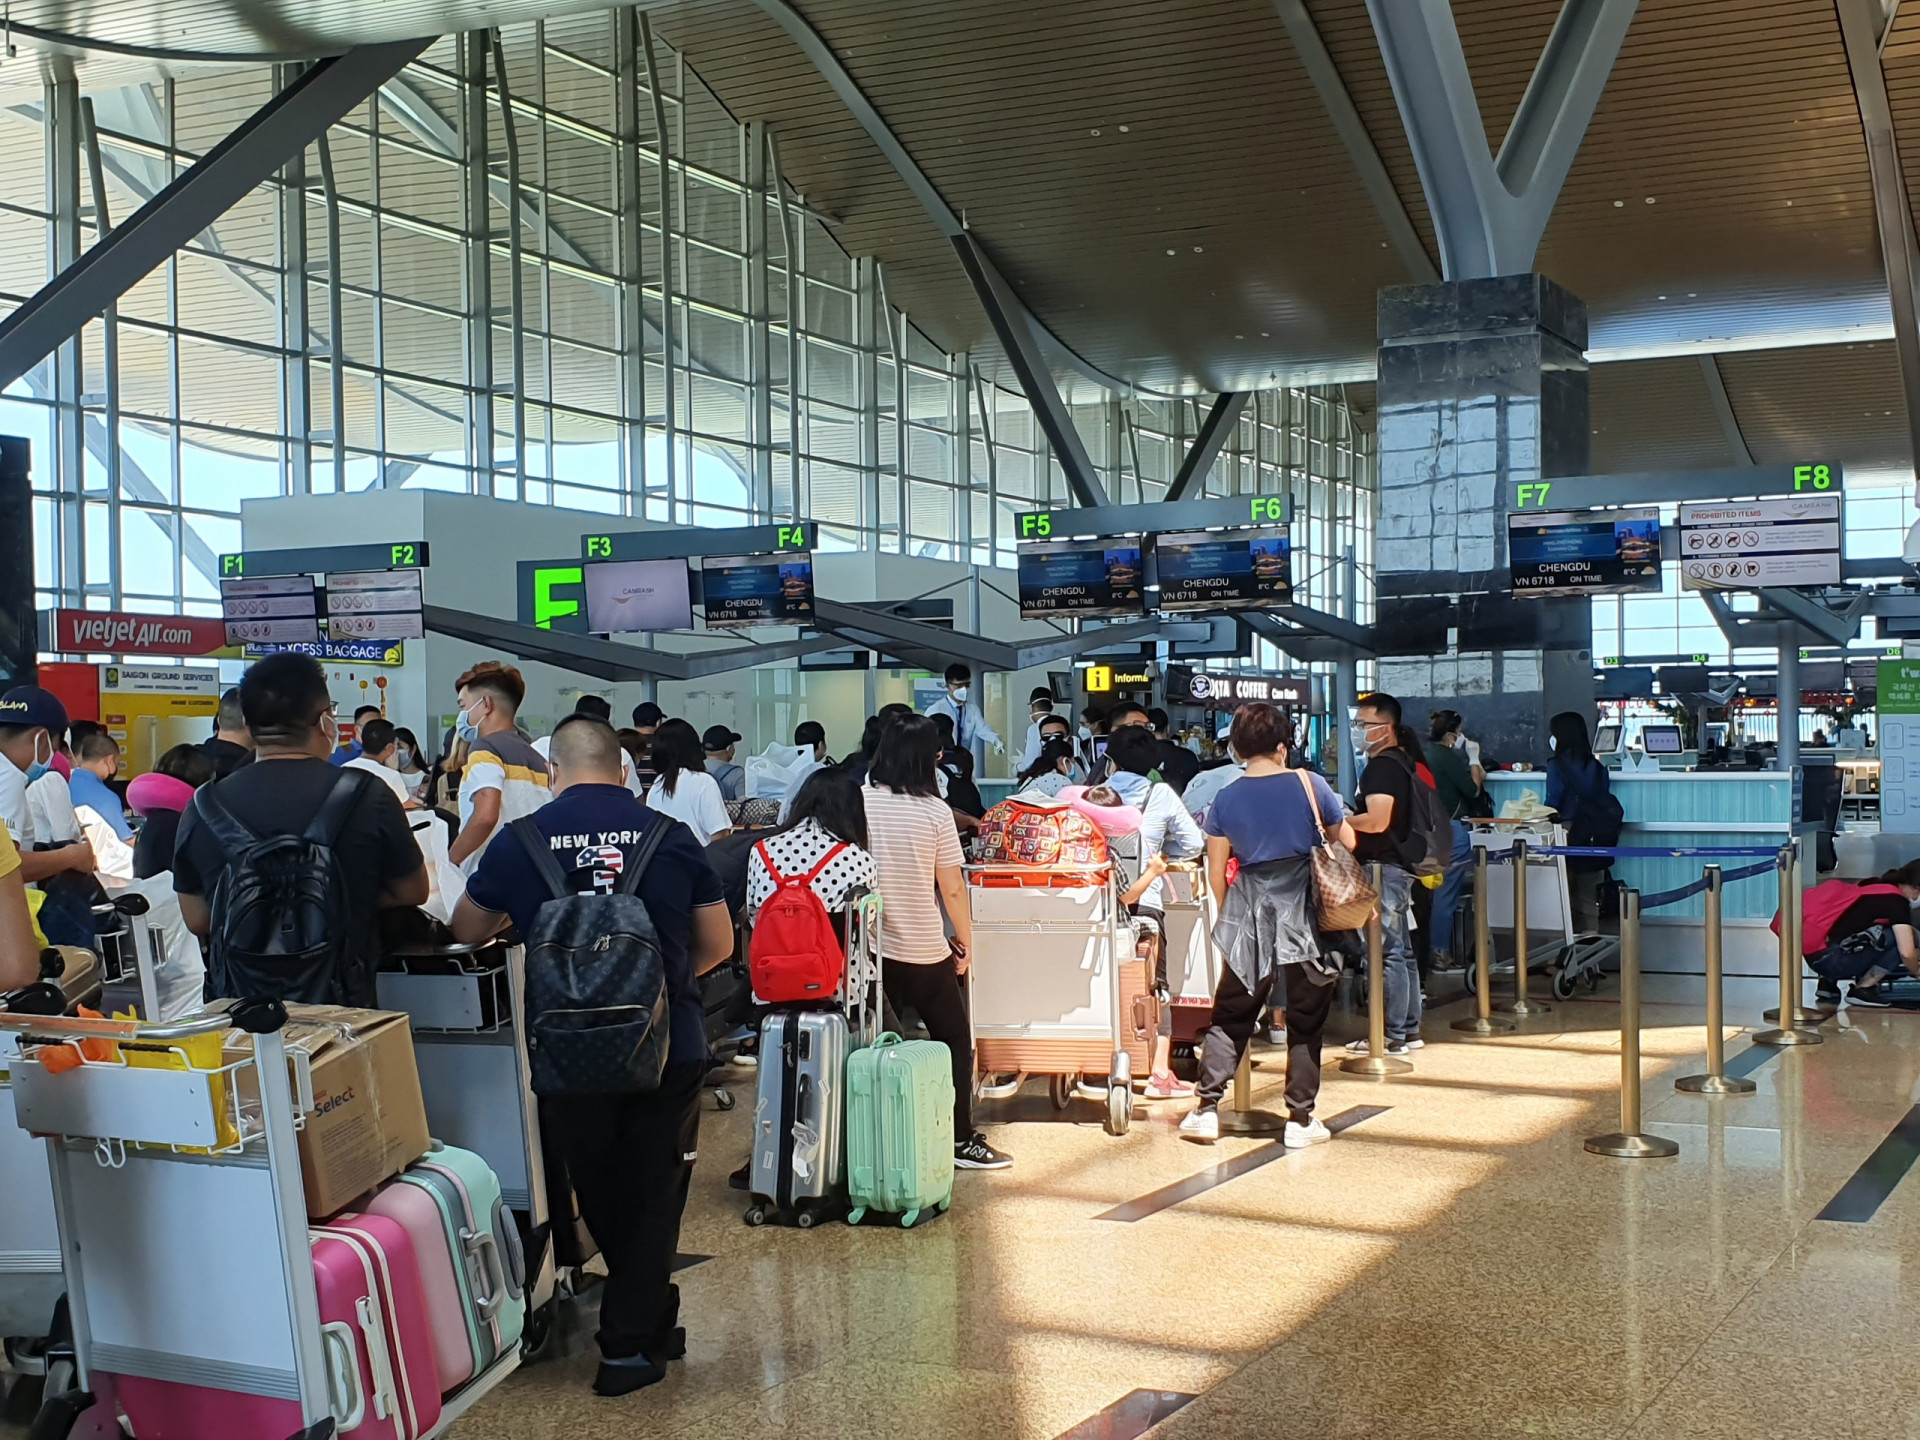  Hành khách Trung Quốc xếp hàng làm thủ tục checkin trước khi lên máy bay về nước